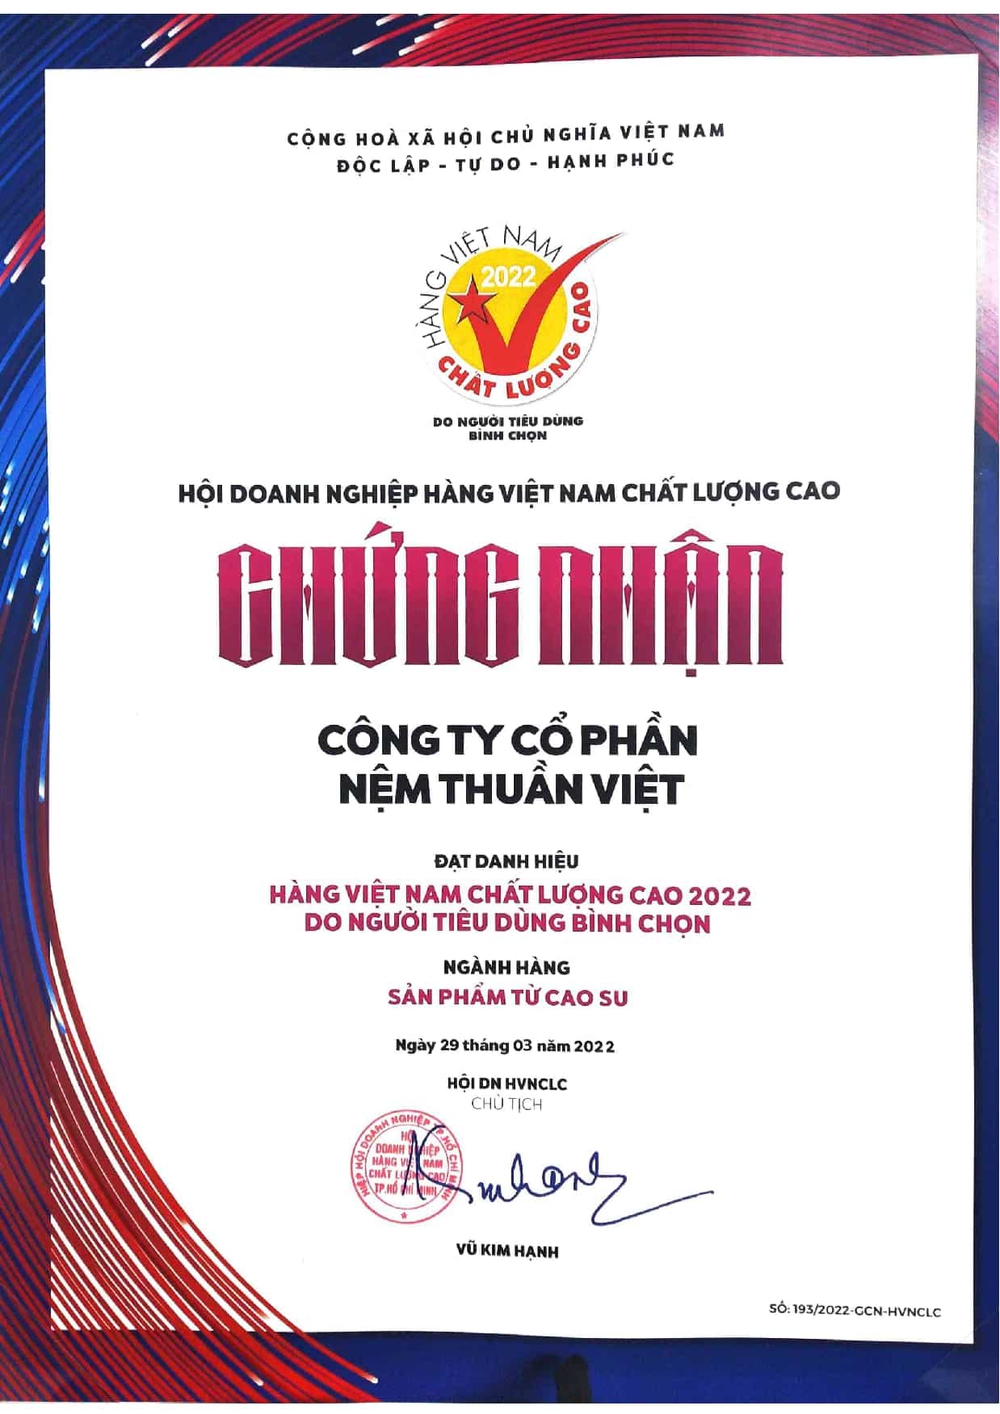 Nệm Thuần Việt vinh dự được bầu chọn là Hàng Việt Nam chất lượng cao năm 2022 - Ảnh 1.